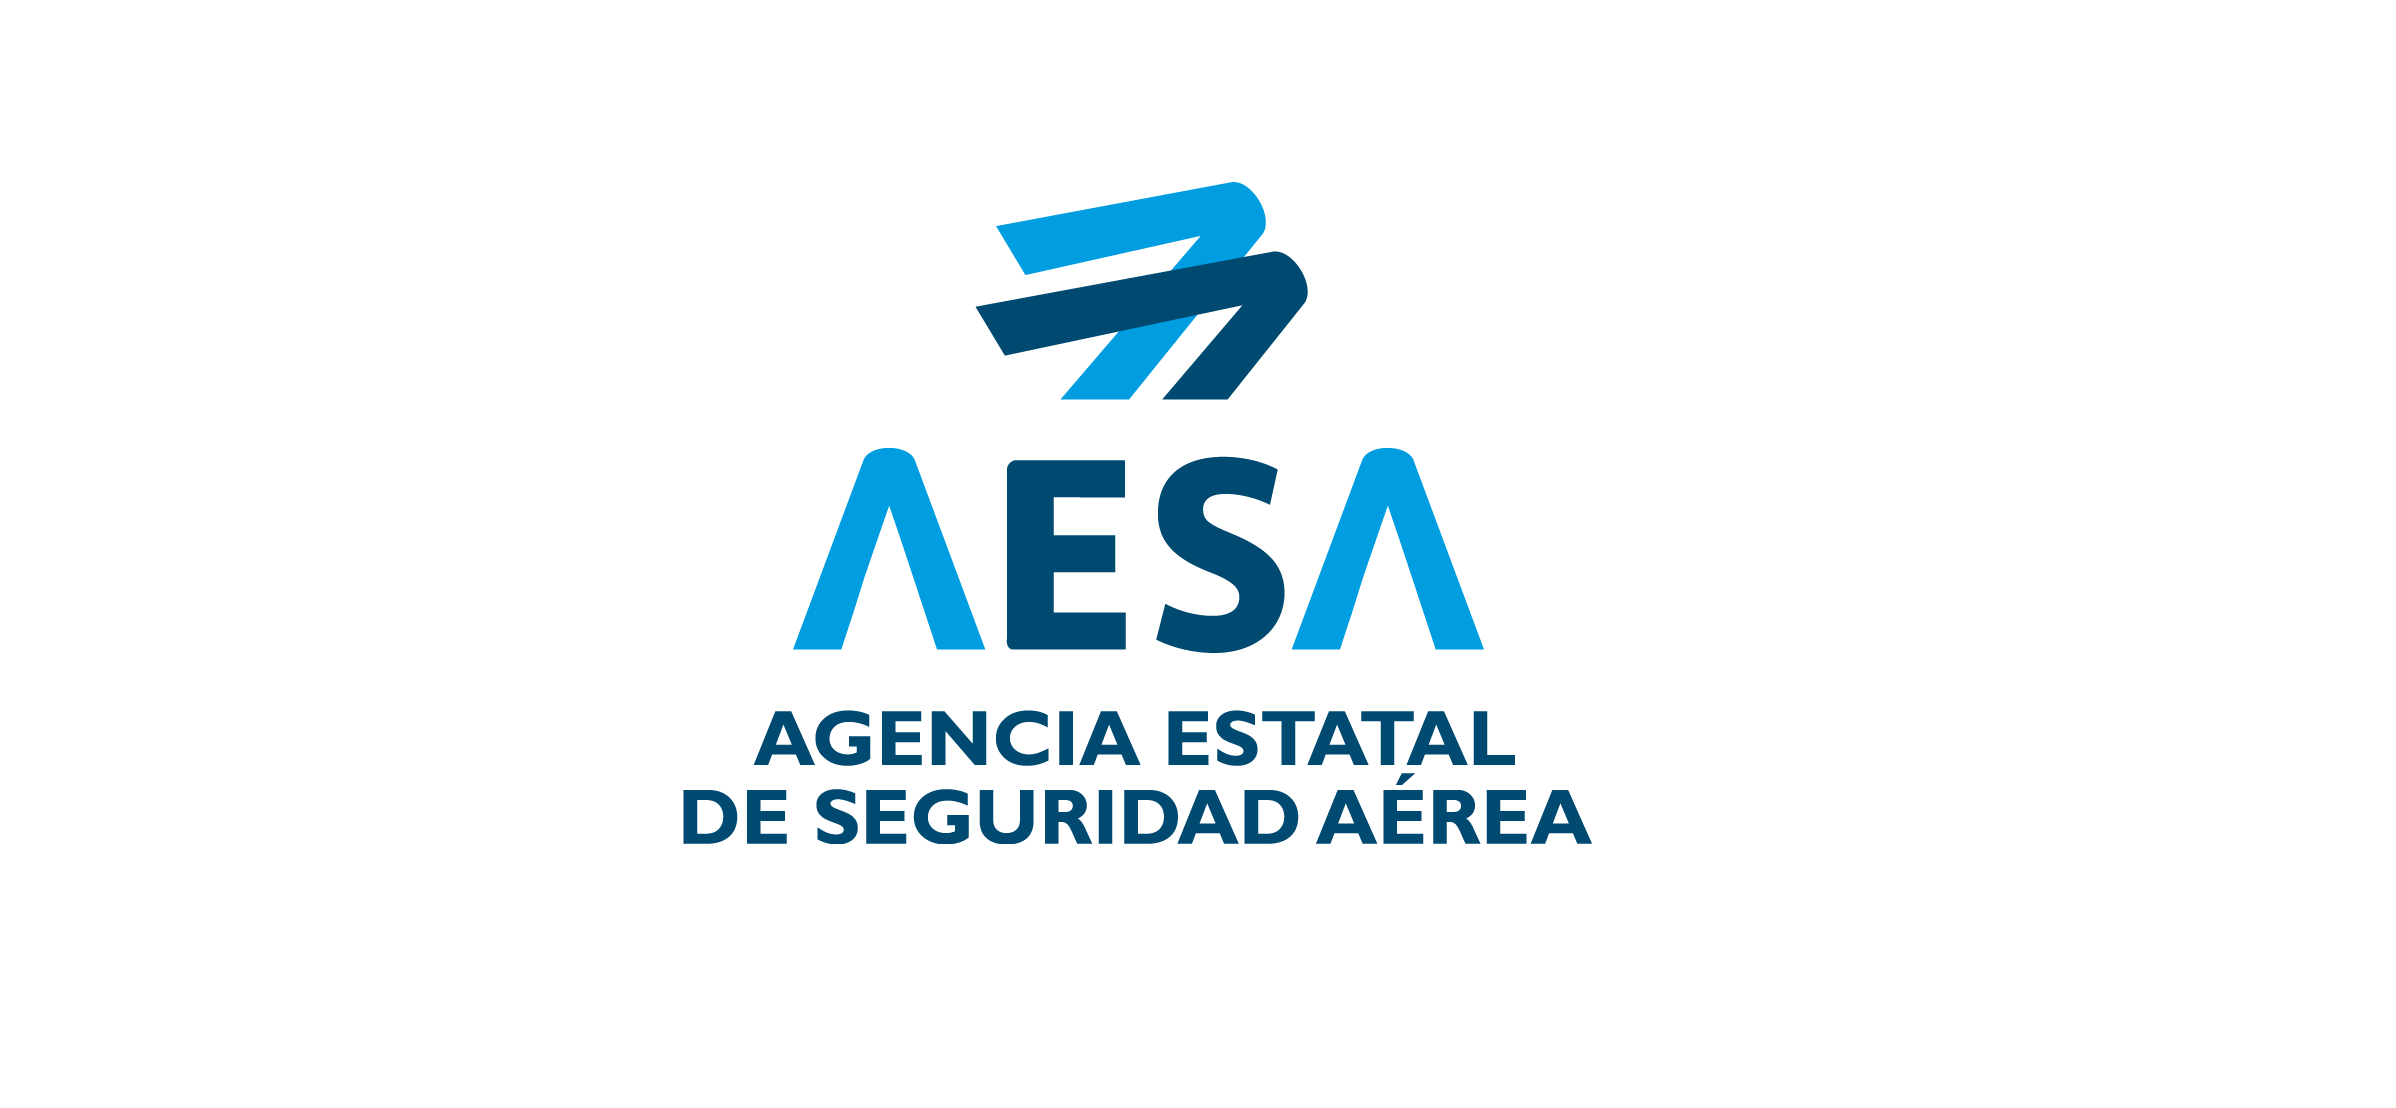 AESA Agencia Estatal de Seguridad Aérea